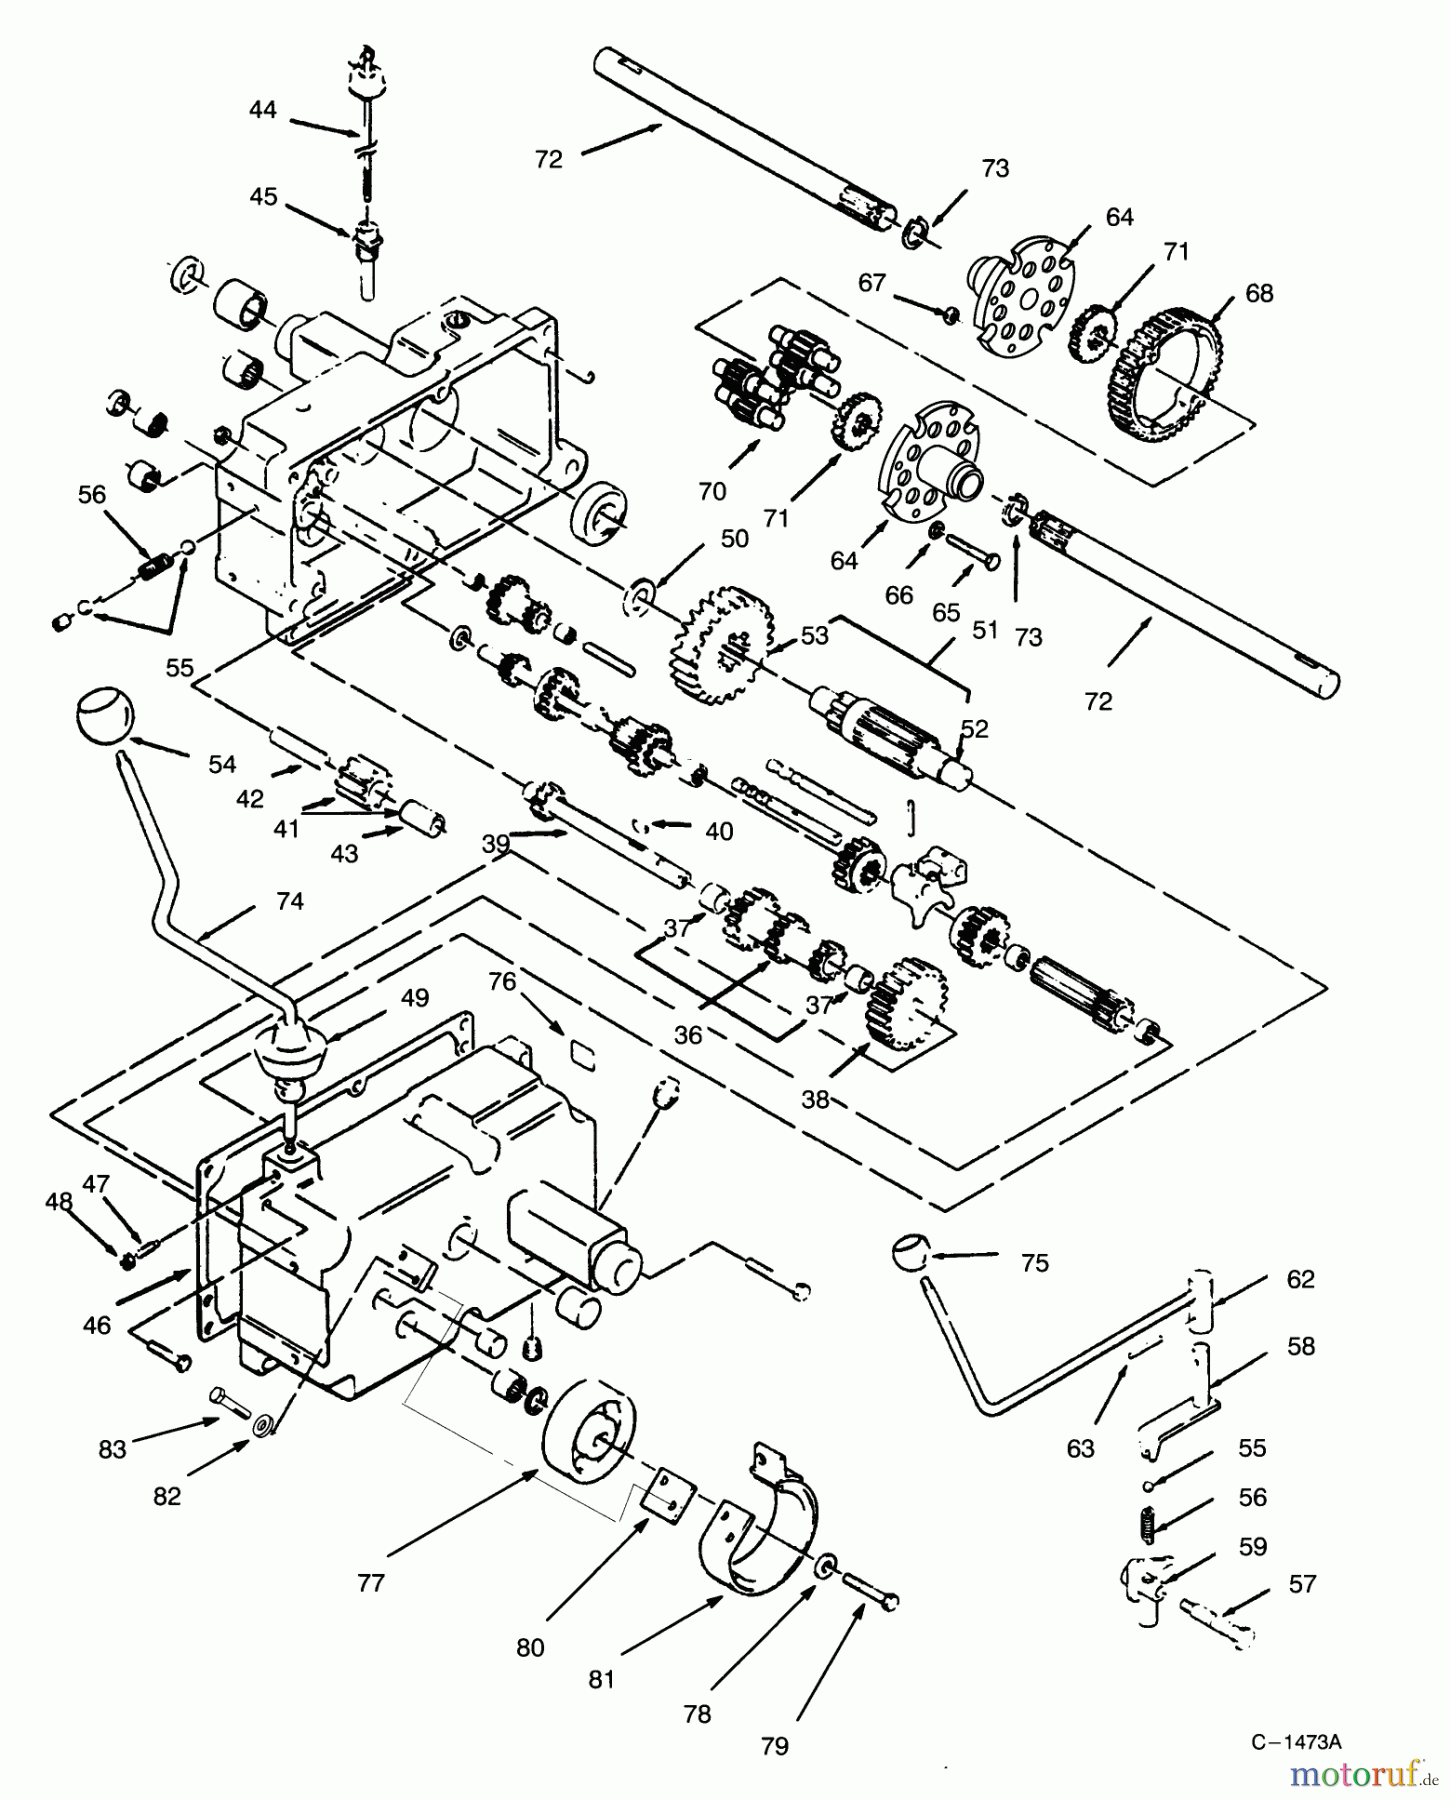  Toro Neu Mowers, Lawn & Garden Tractor Seite 1 73362 (312-8) - Toro 312-8 Garden Tractor, 1996 (6900001-6999999) TRANSMISSION 8-SPEED #2